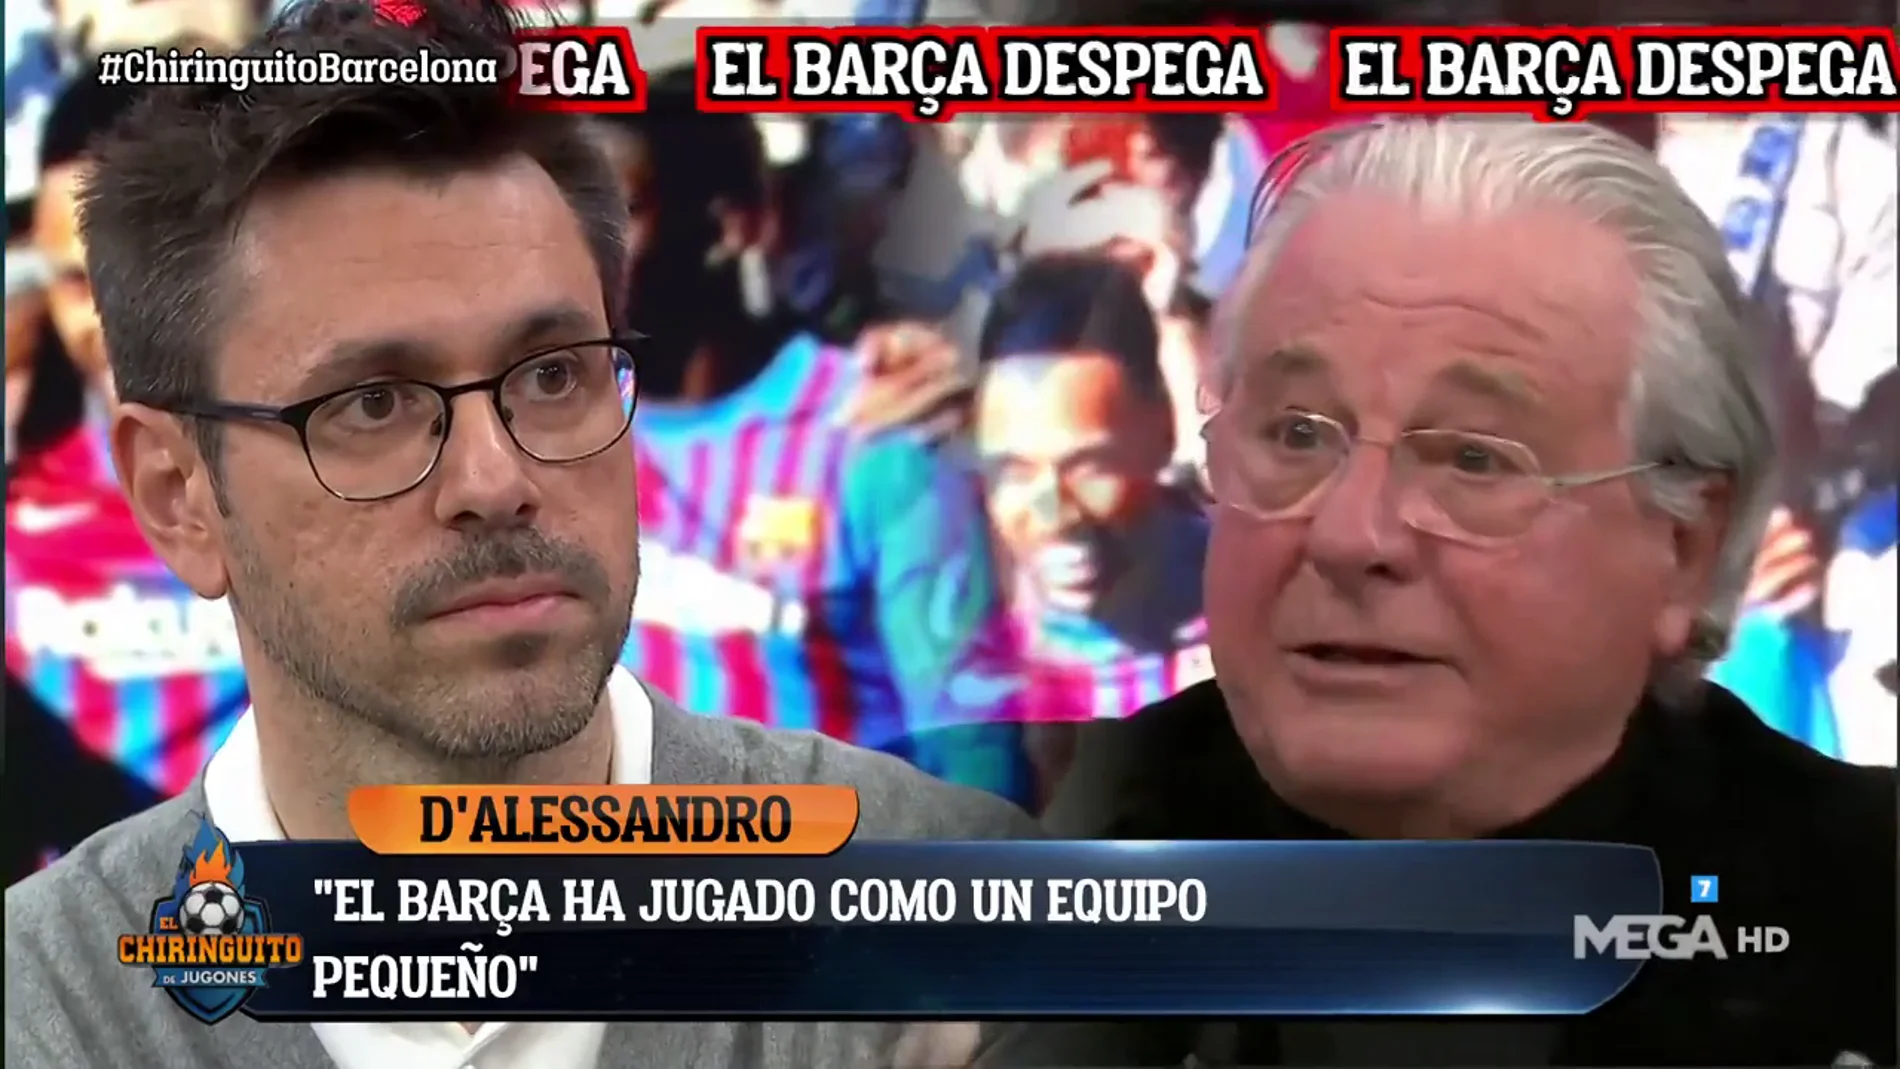  Jorge D'Alessandro: "El Barça ha jugado como un equipo pequeño"